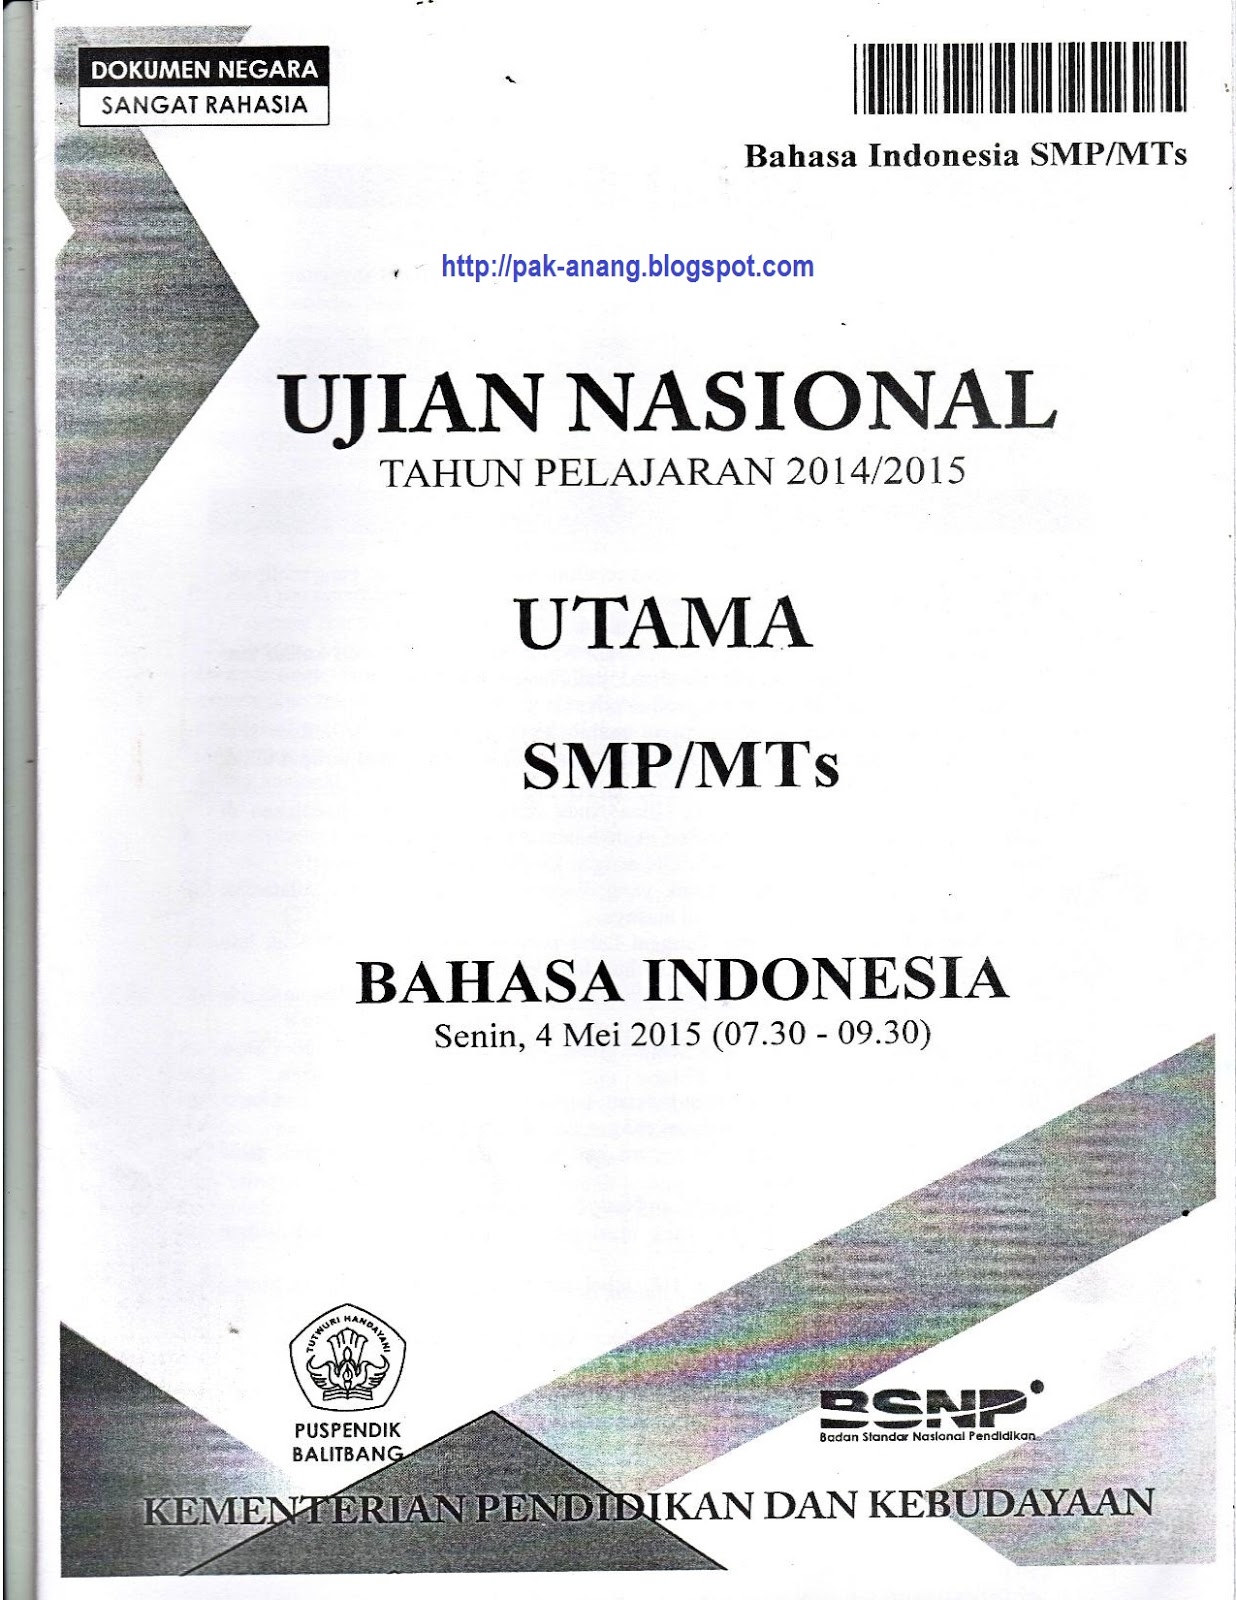 Salah satunya adalah mencoba mengerjakan naskah soal asli UN Bahasa Indonesia SMP 2015 yang disusun oleh BSNP Kemdikbud